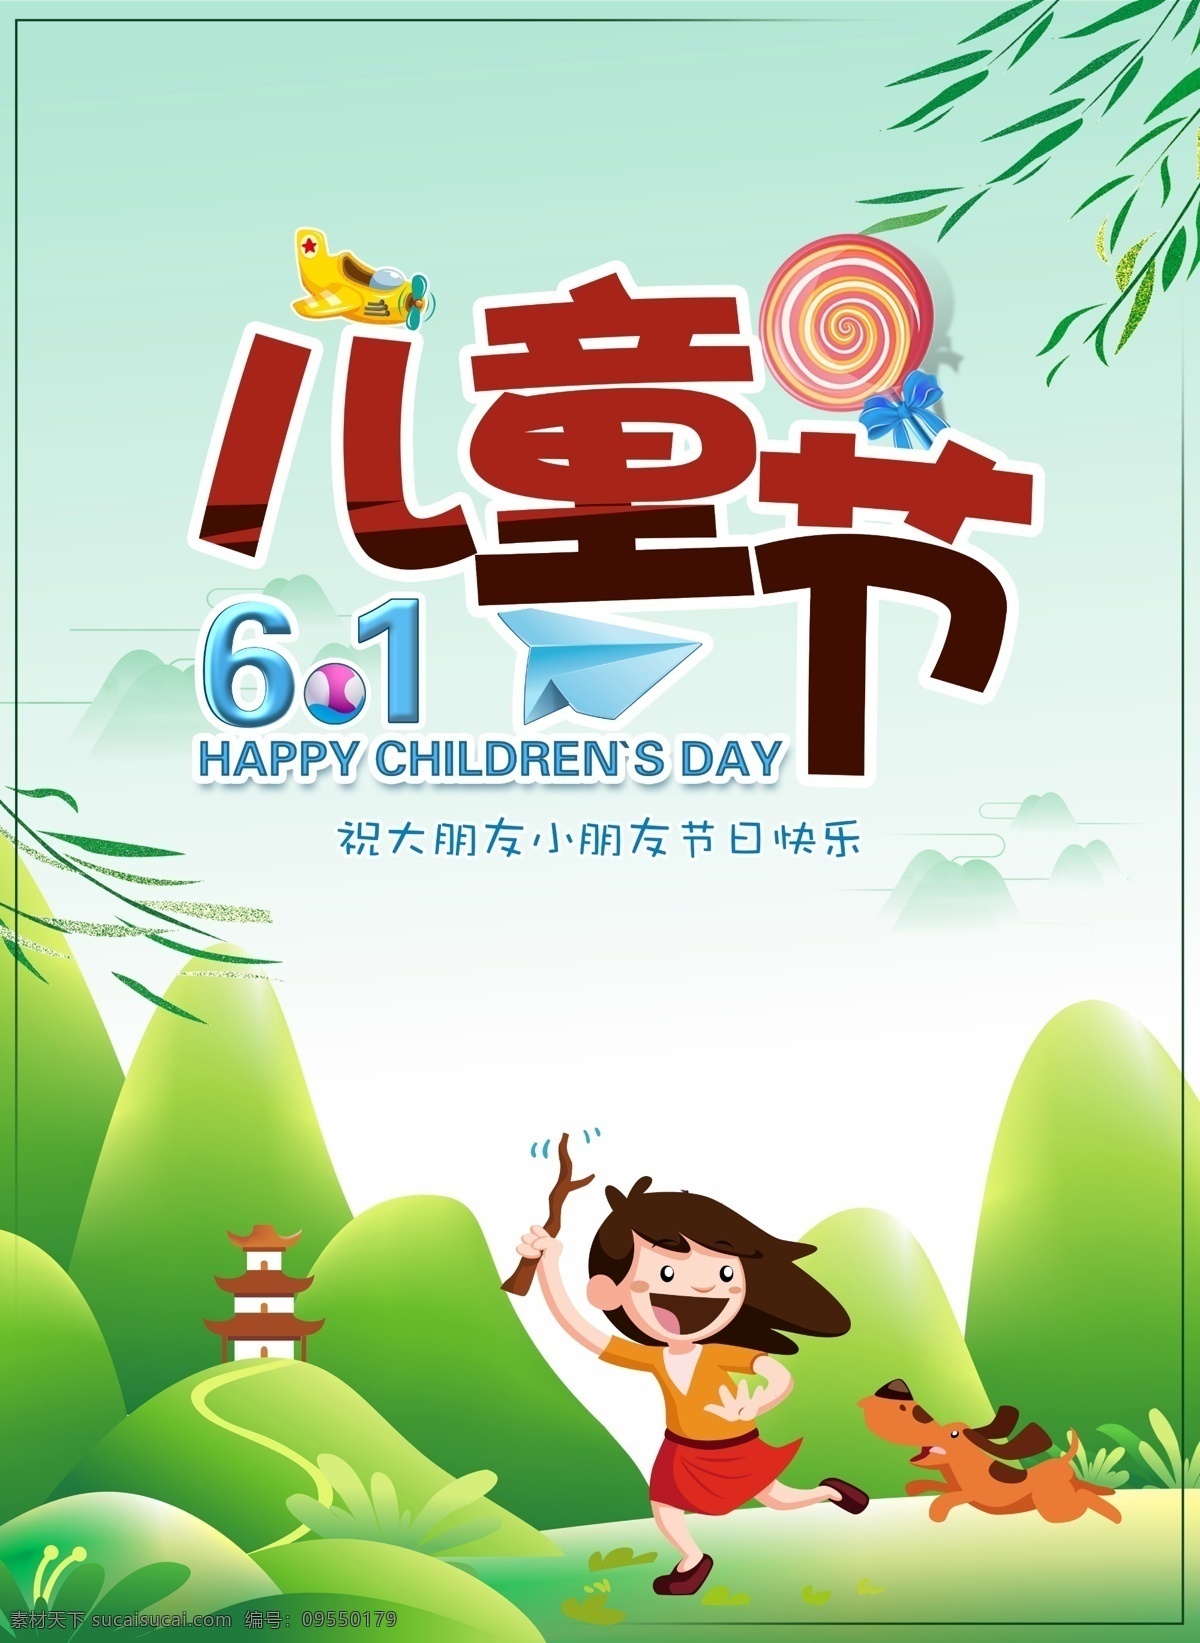 儿童节 节日 宣传 海报 孩子 飞机 绿色 印刷 儿童 快乐 柳树 郊外 小狗 棒棒糖 61 节日快乐 文字设计